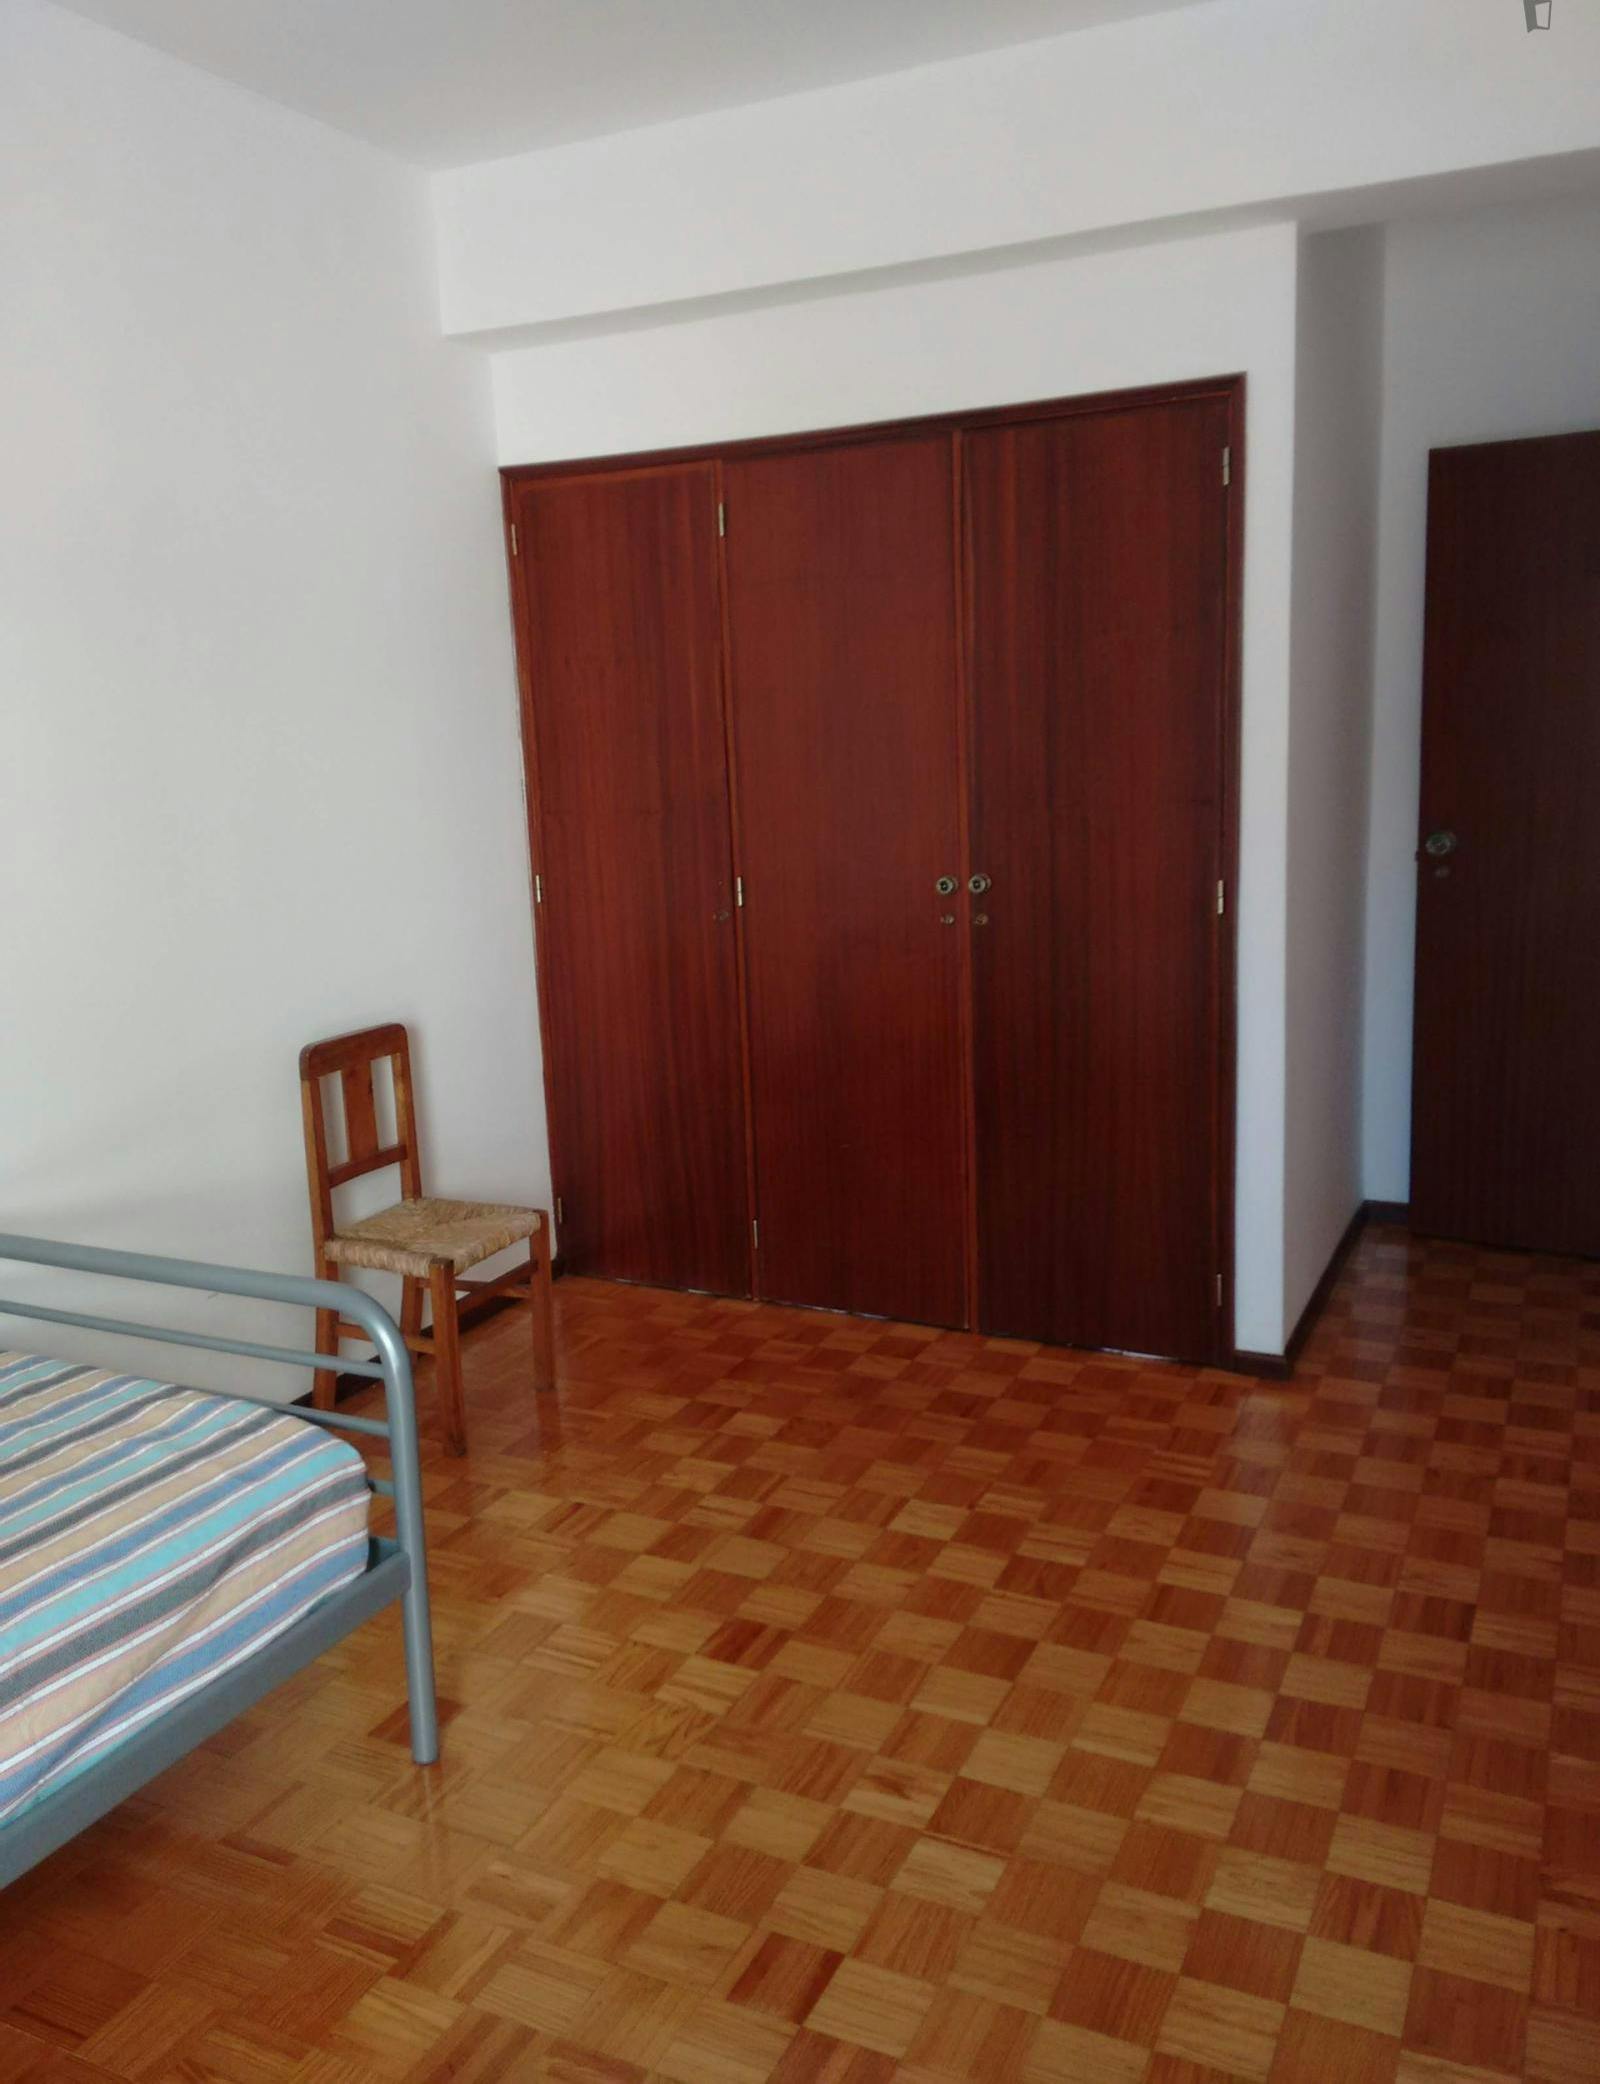 Very cosy single bedroom close to Instituto Politécnico de Castelo Branco